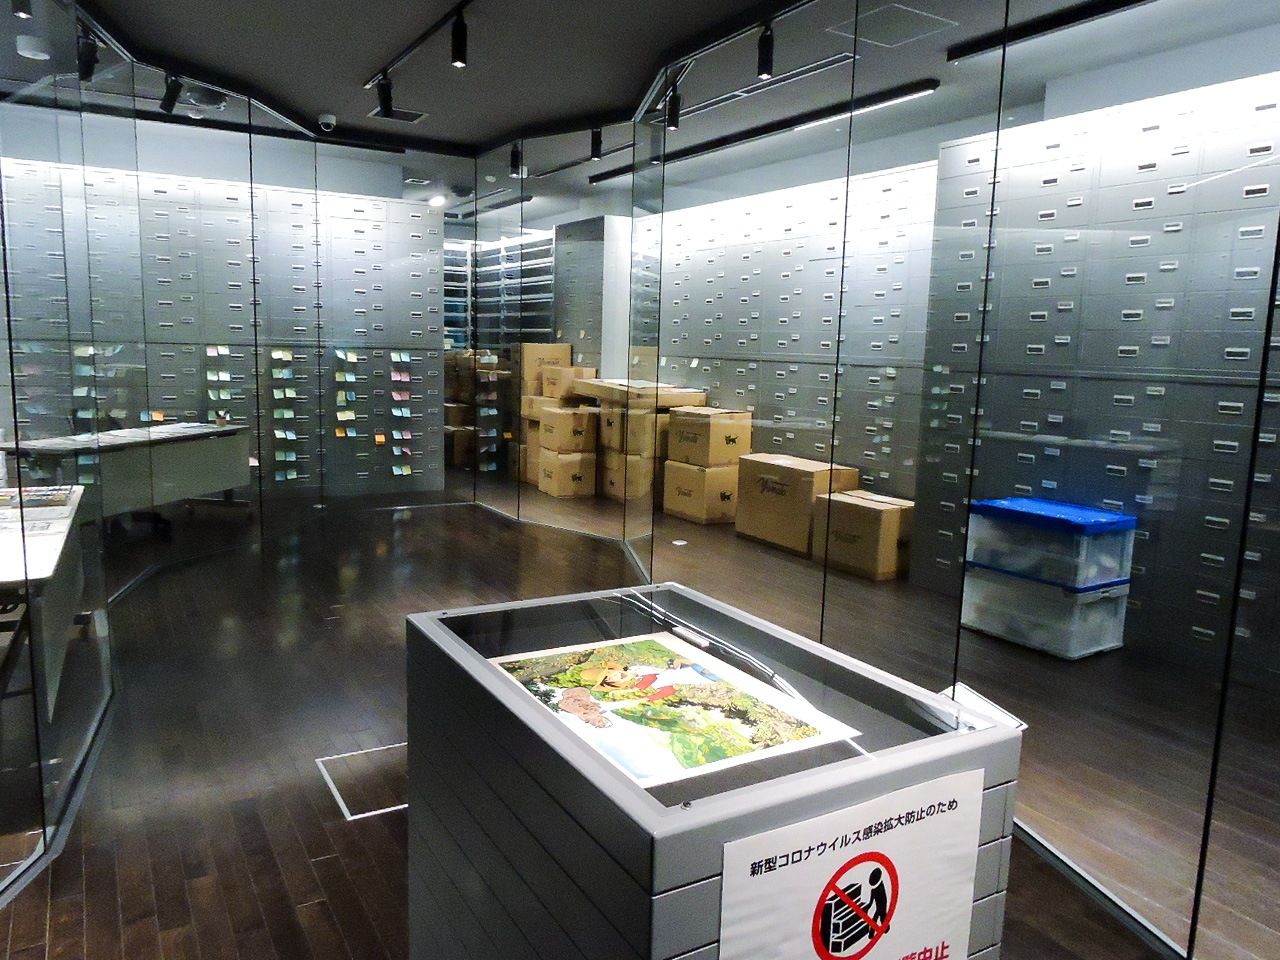 El archivo del Museo del Manga Yokote Masuda, donde se conservan los originales. (Octubre de 2020)